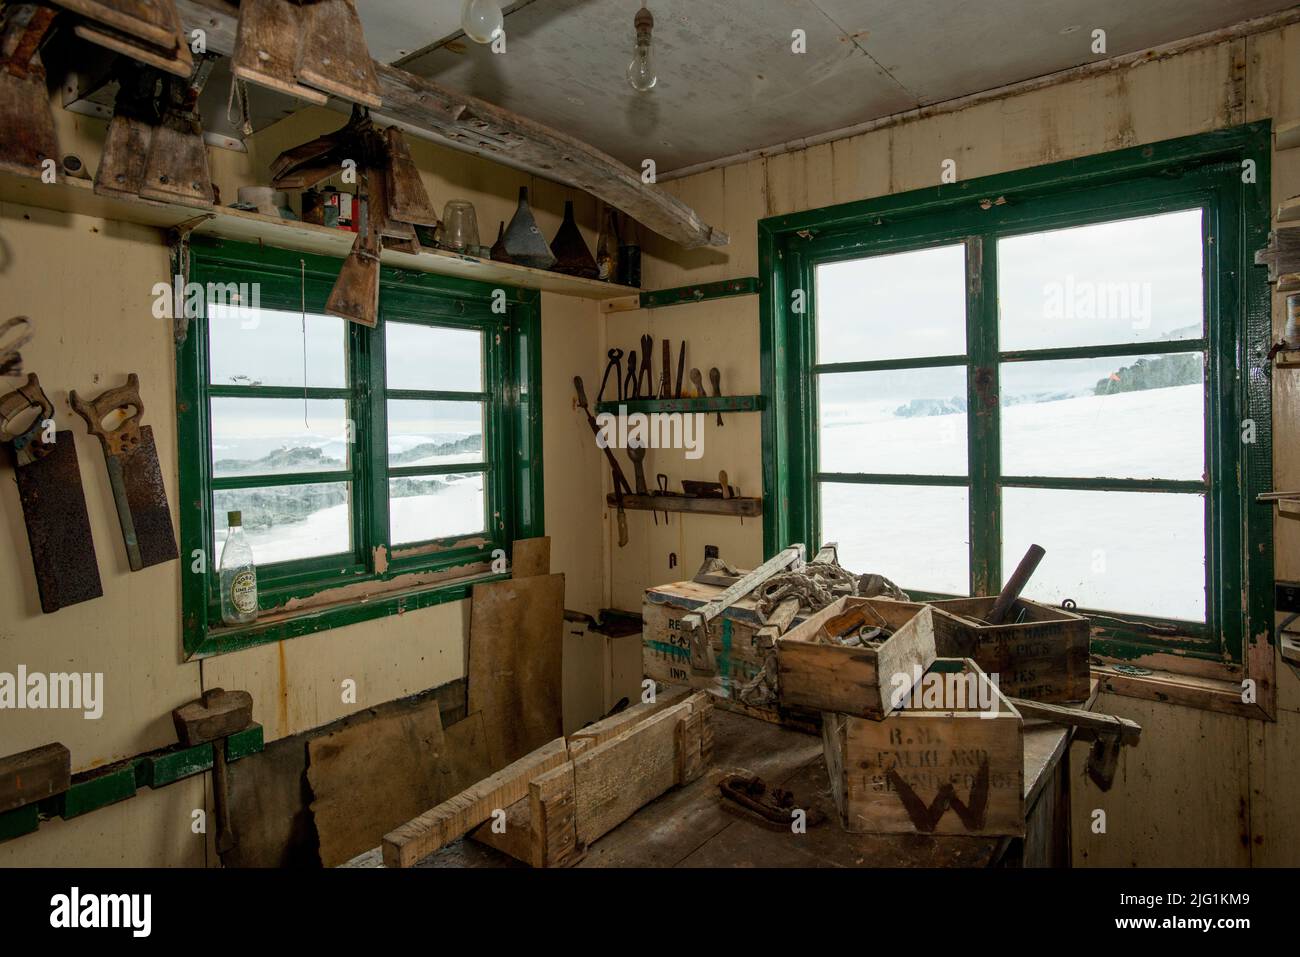 El taller en la isla Detaille ( Estación W ) Sitio histórico de la cabaña British Antarctic Survey en la Antártida Foto de stock